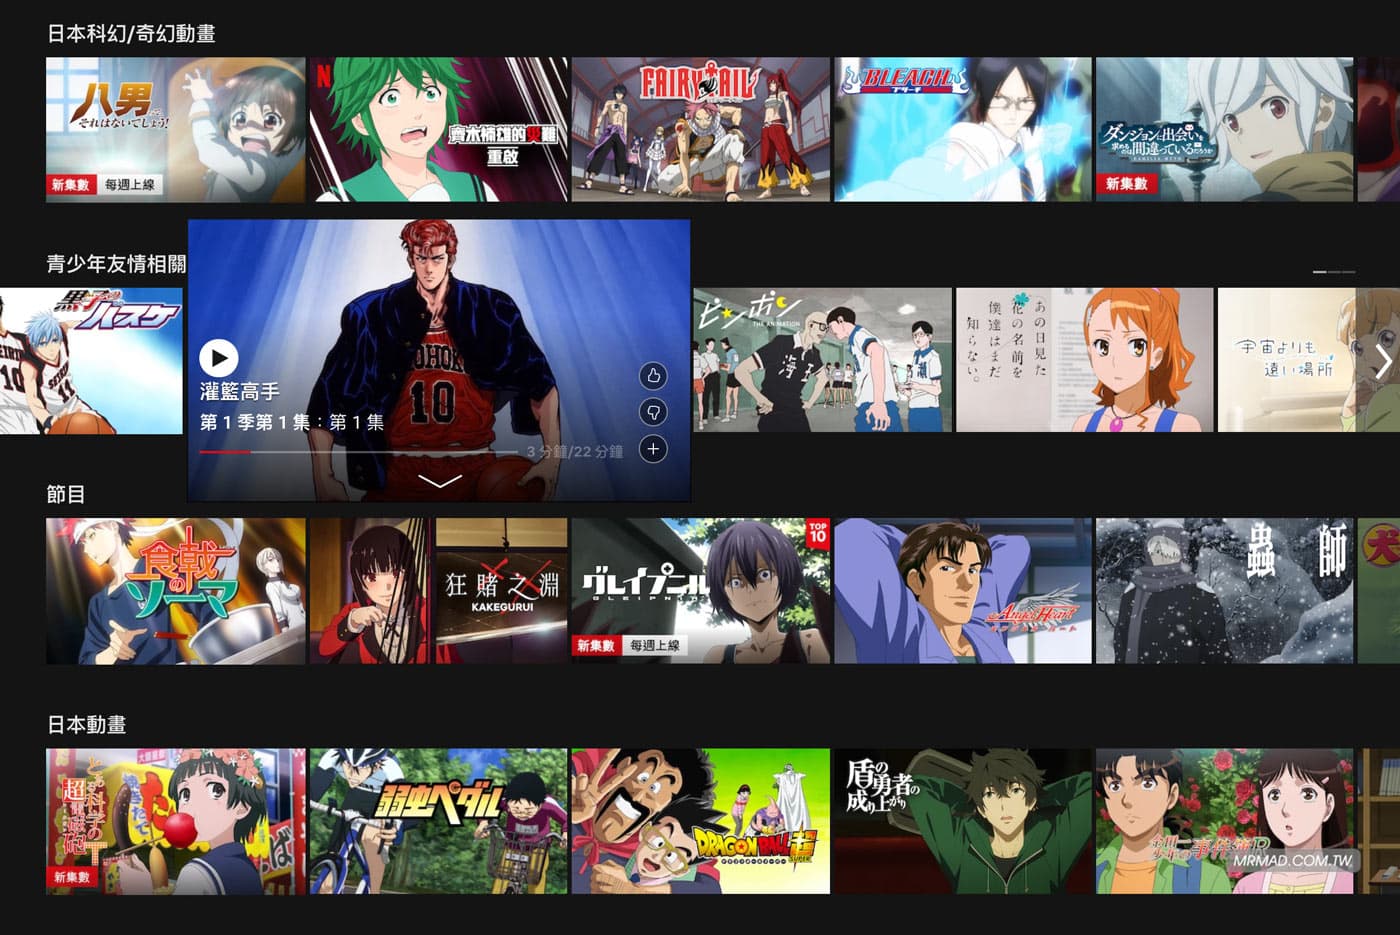 日本 Netflix 實測畫面動畫卡通